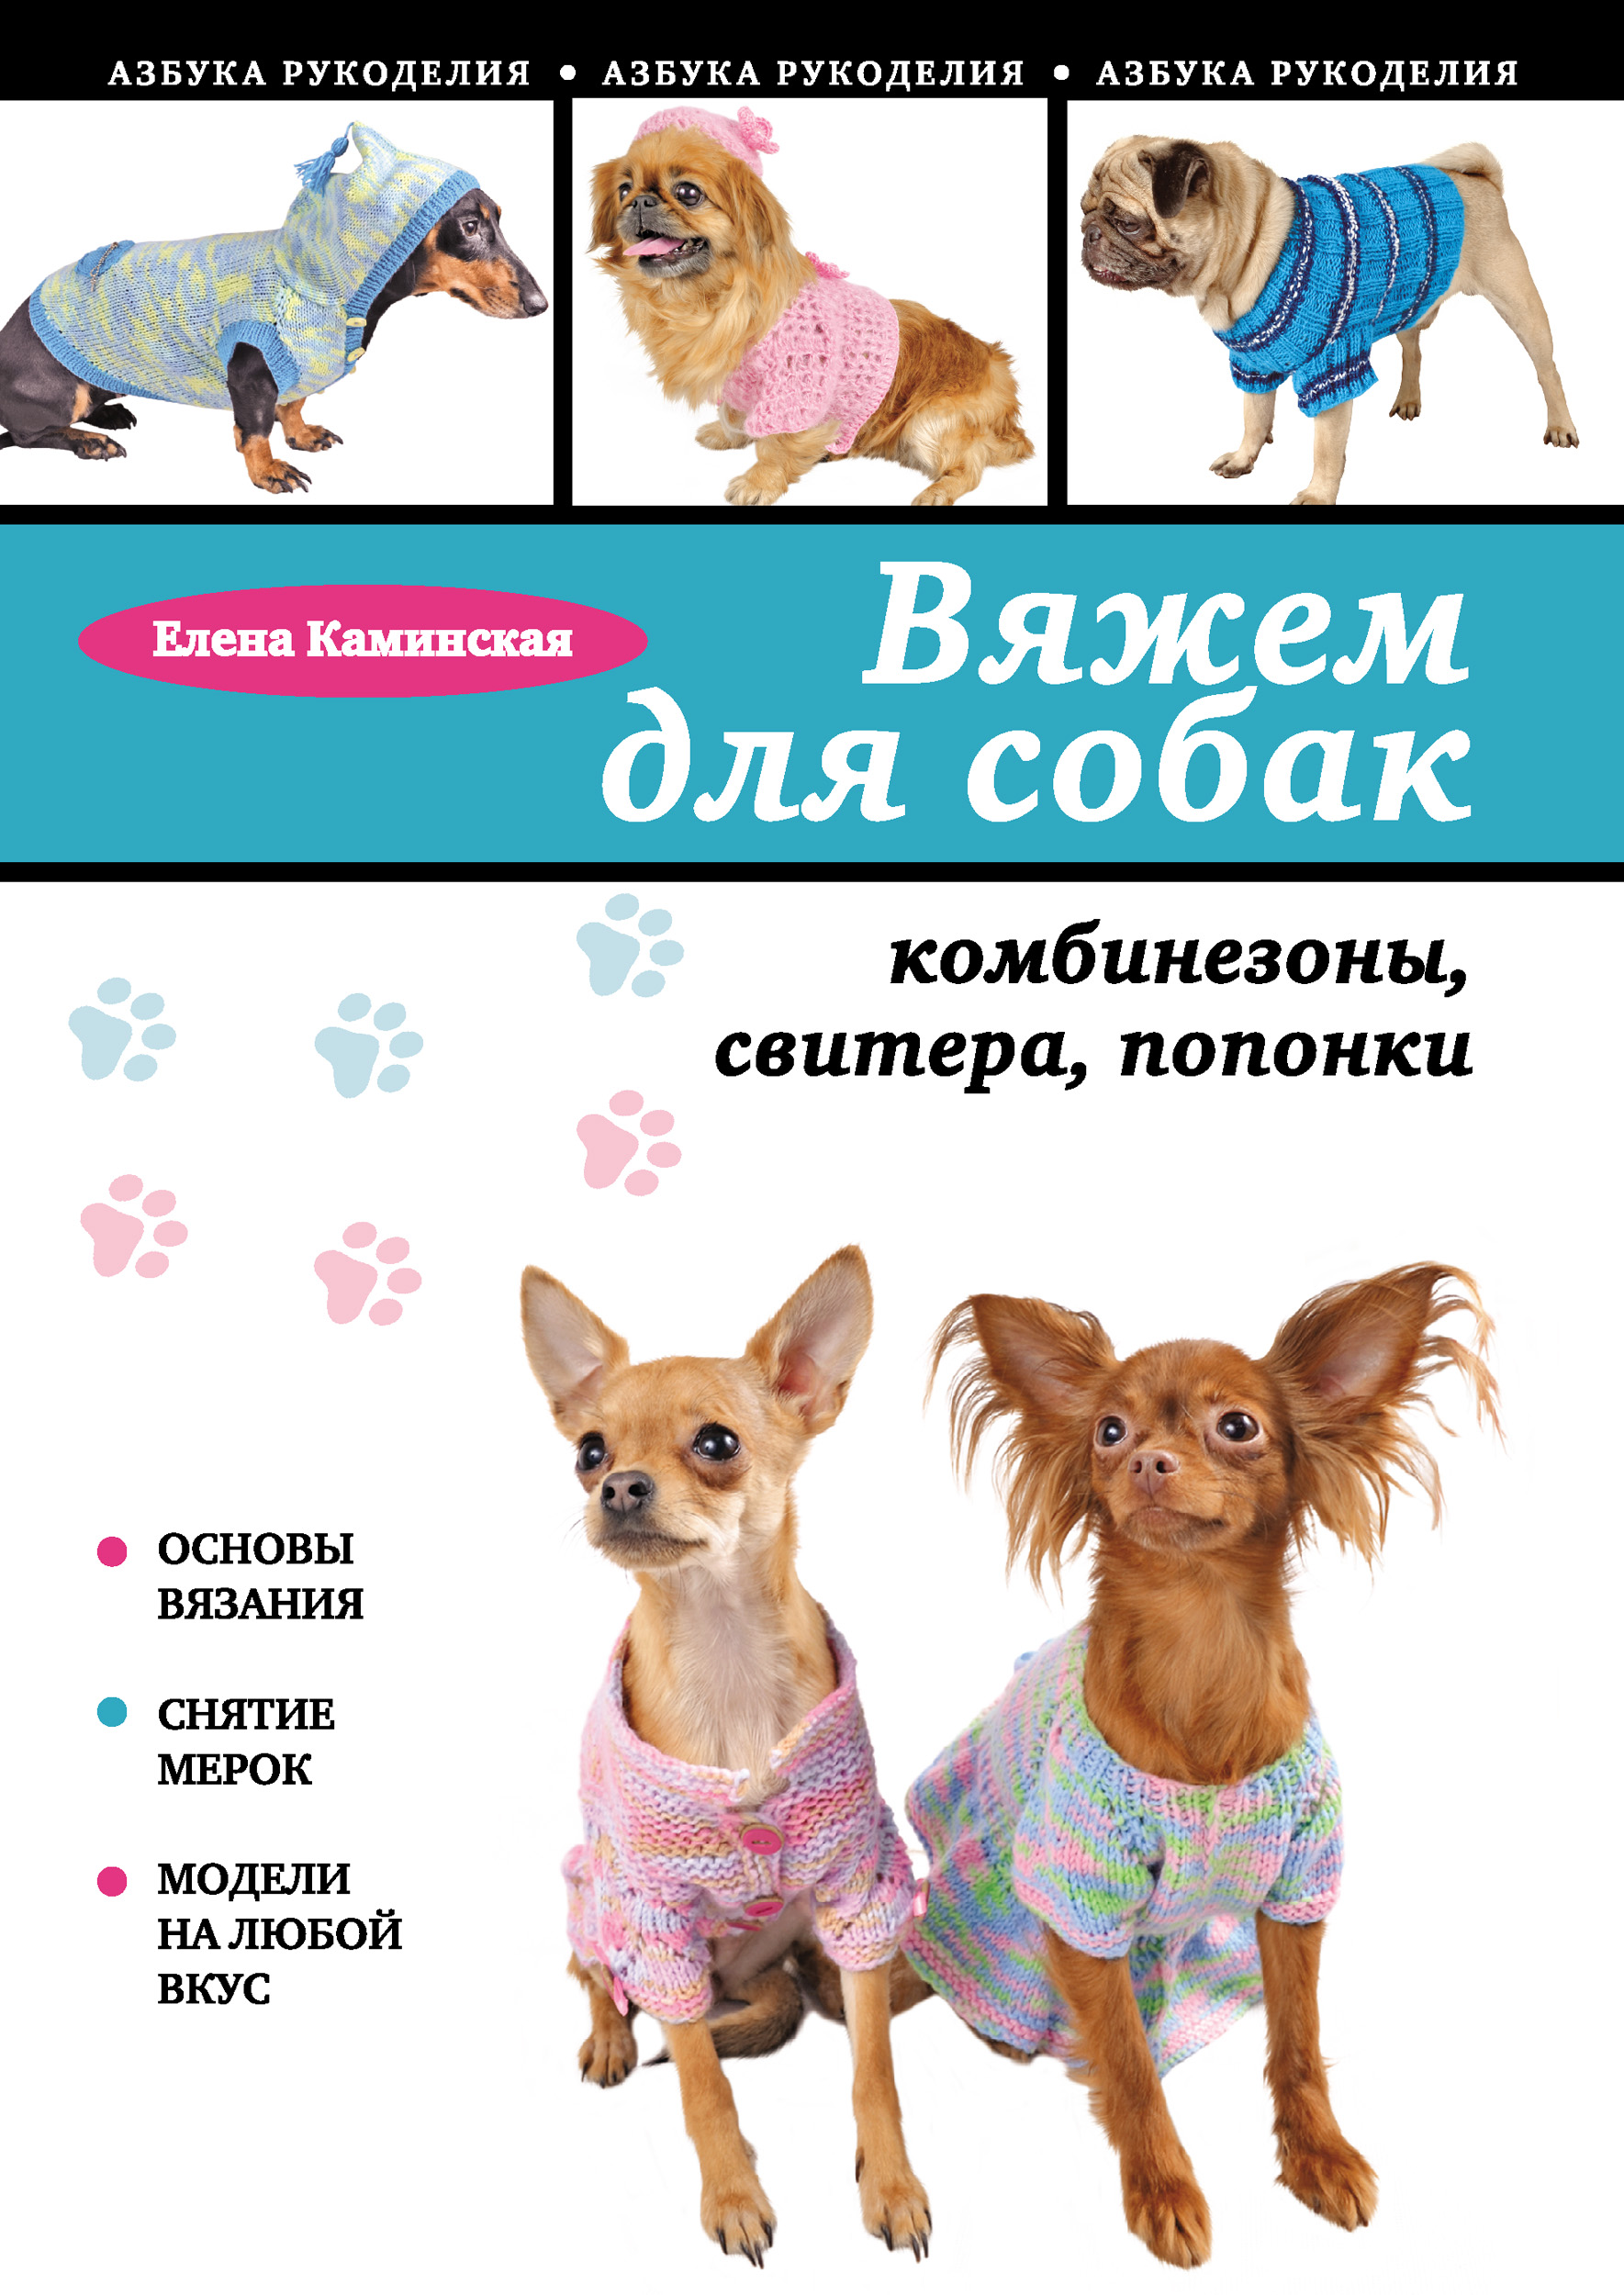 Вязаная одежда для собак своими руками: выкройки с фото и видео